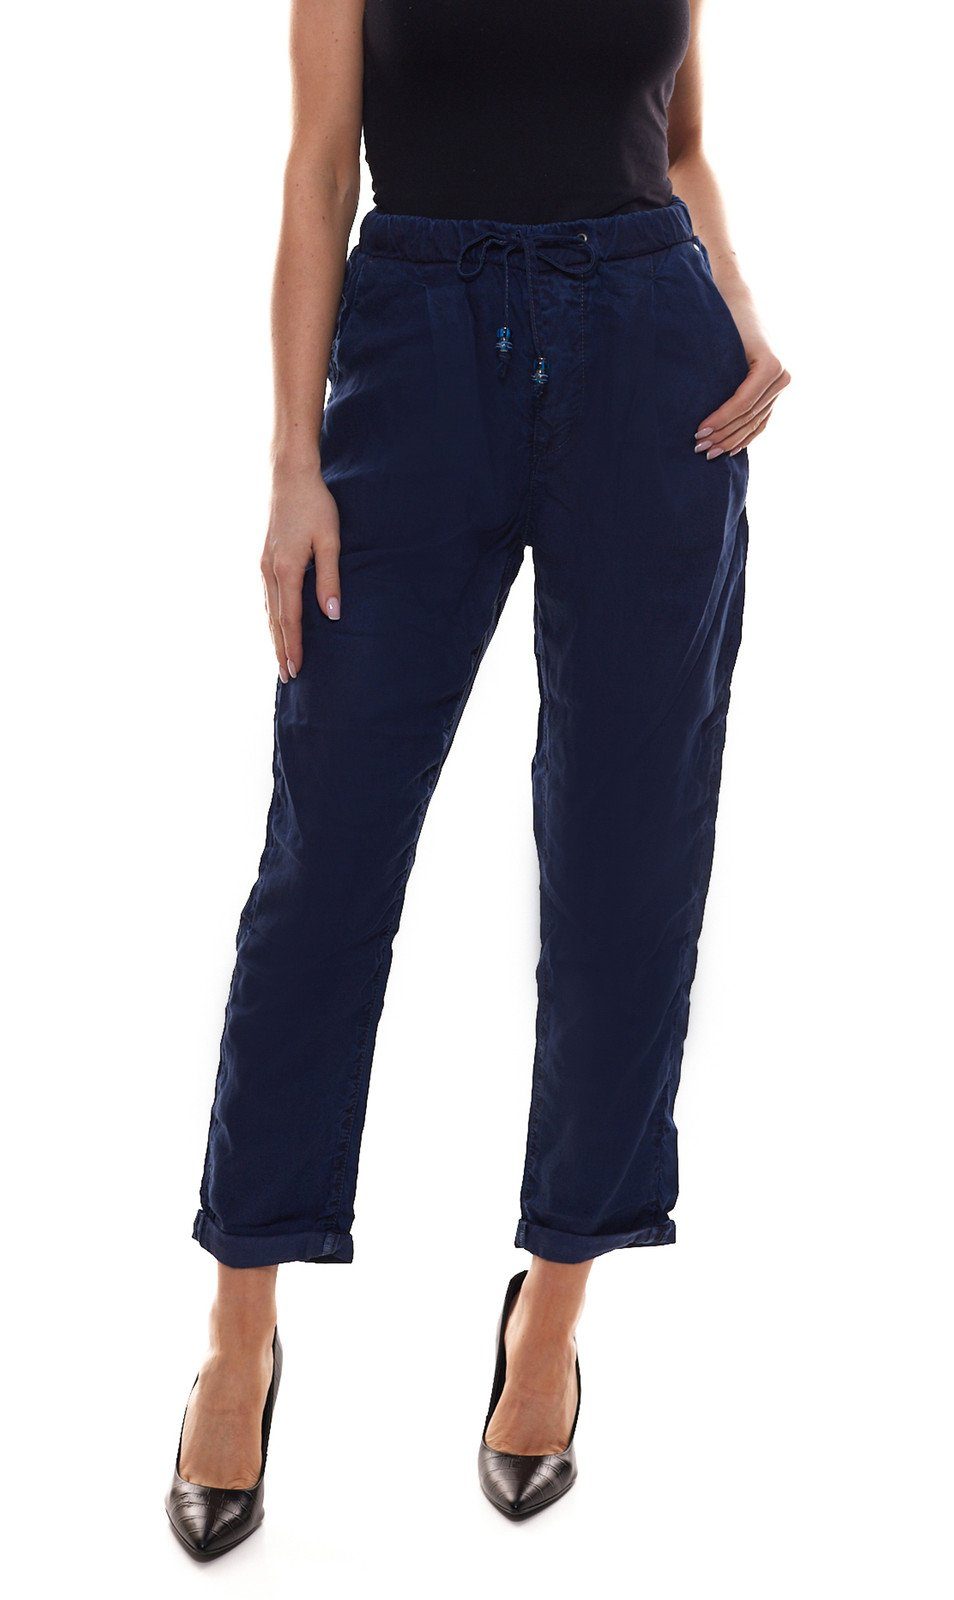 Jeans Sommer-Hose Blau Stoffhose Blue Damen Stoff-Hose Jeans bequeme Pepe Donna Pepe im Jeans-Stil Business-Hose